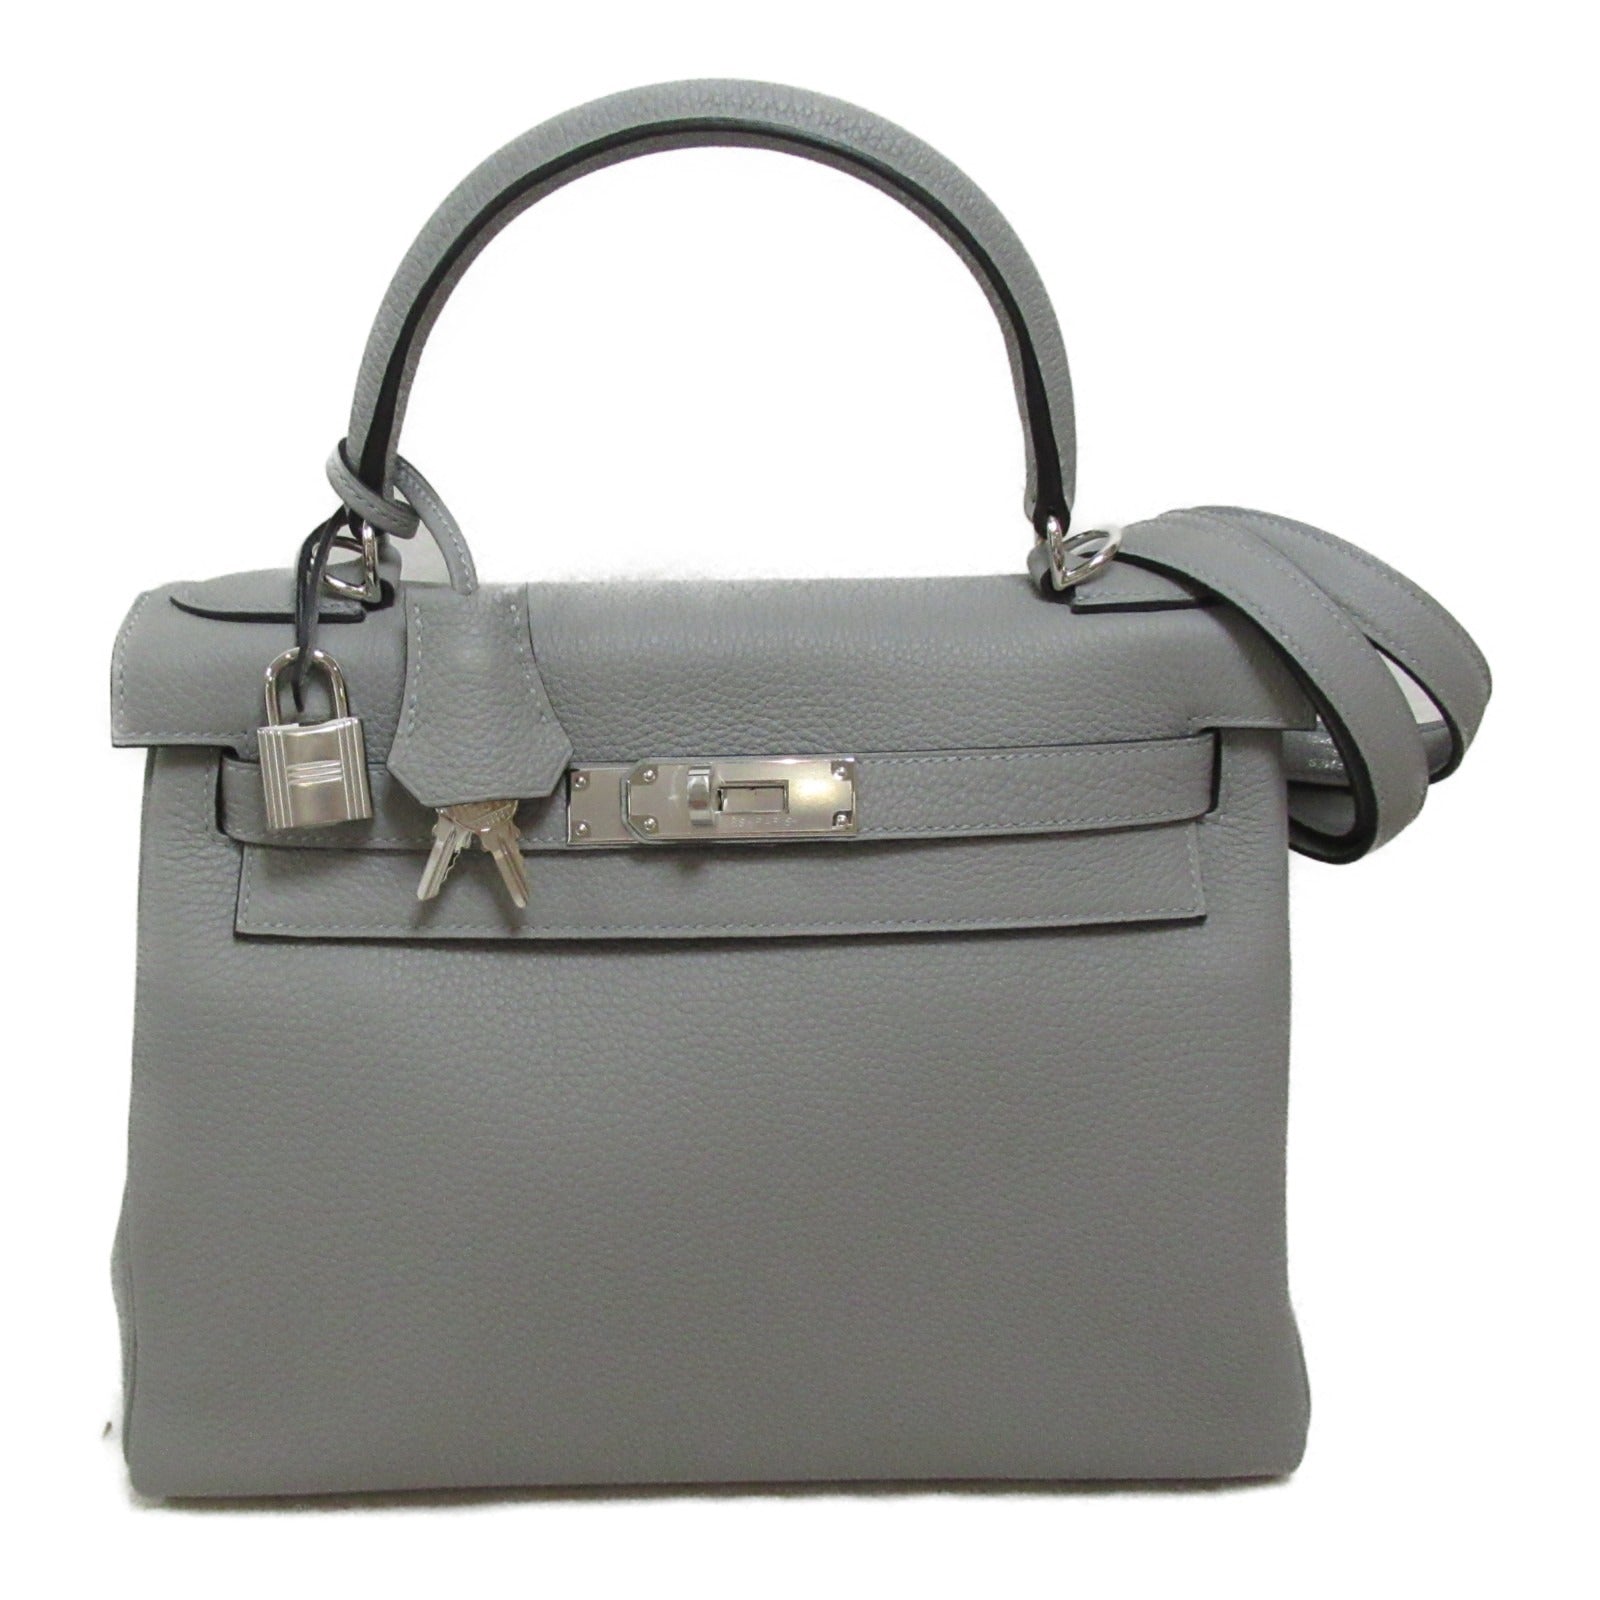 Hermes Kelly 28 Handbag Handbag Handbag TOGO LADY